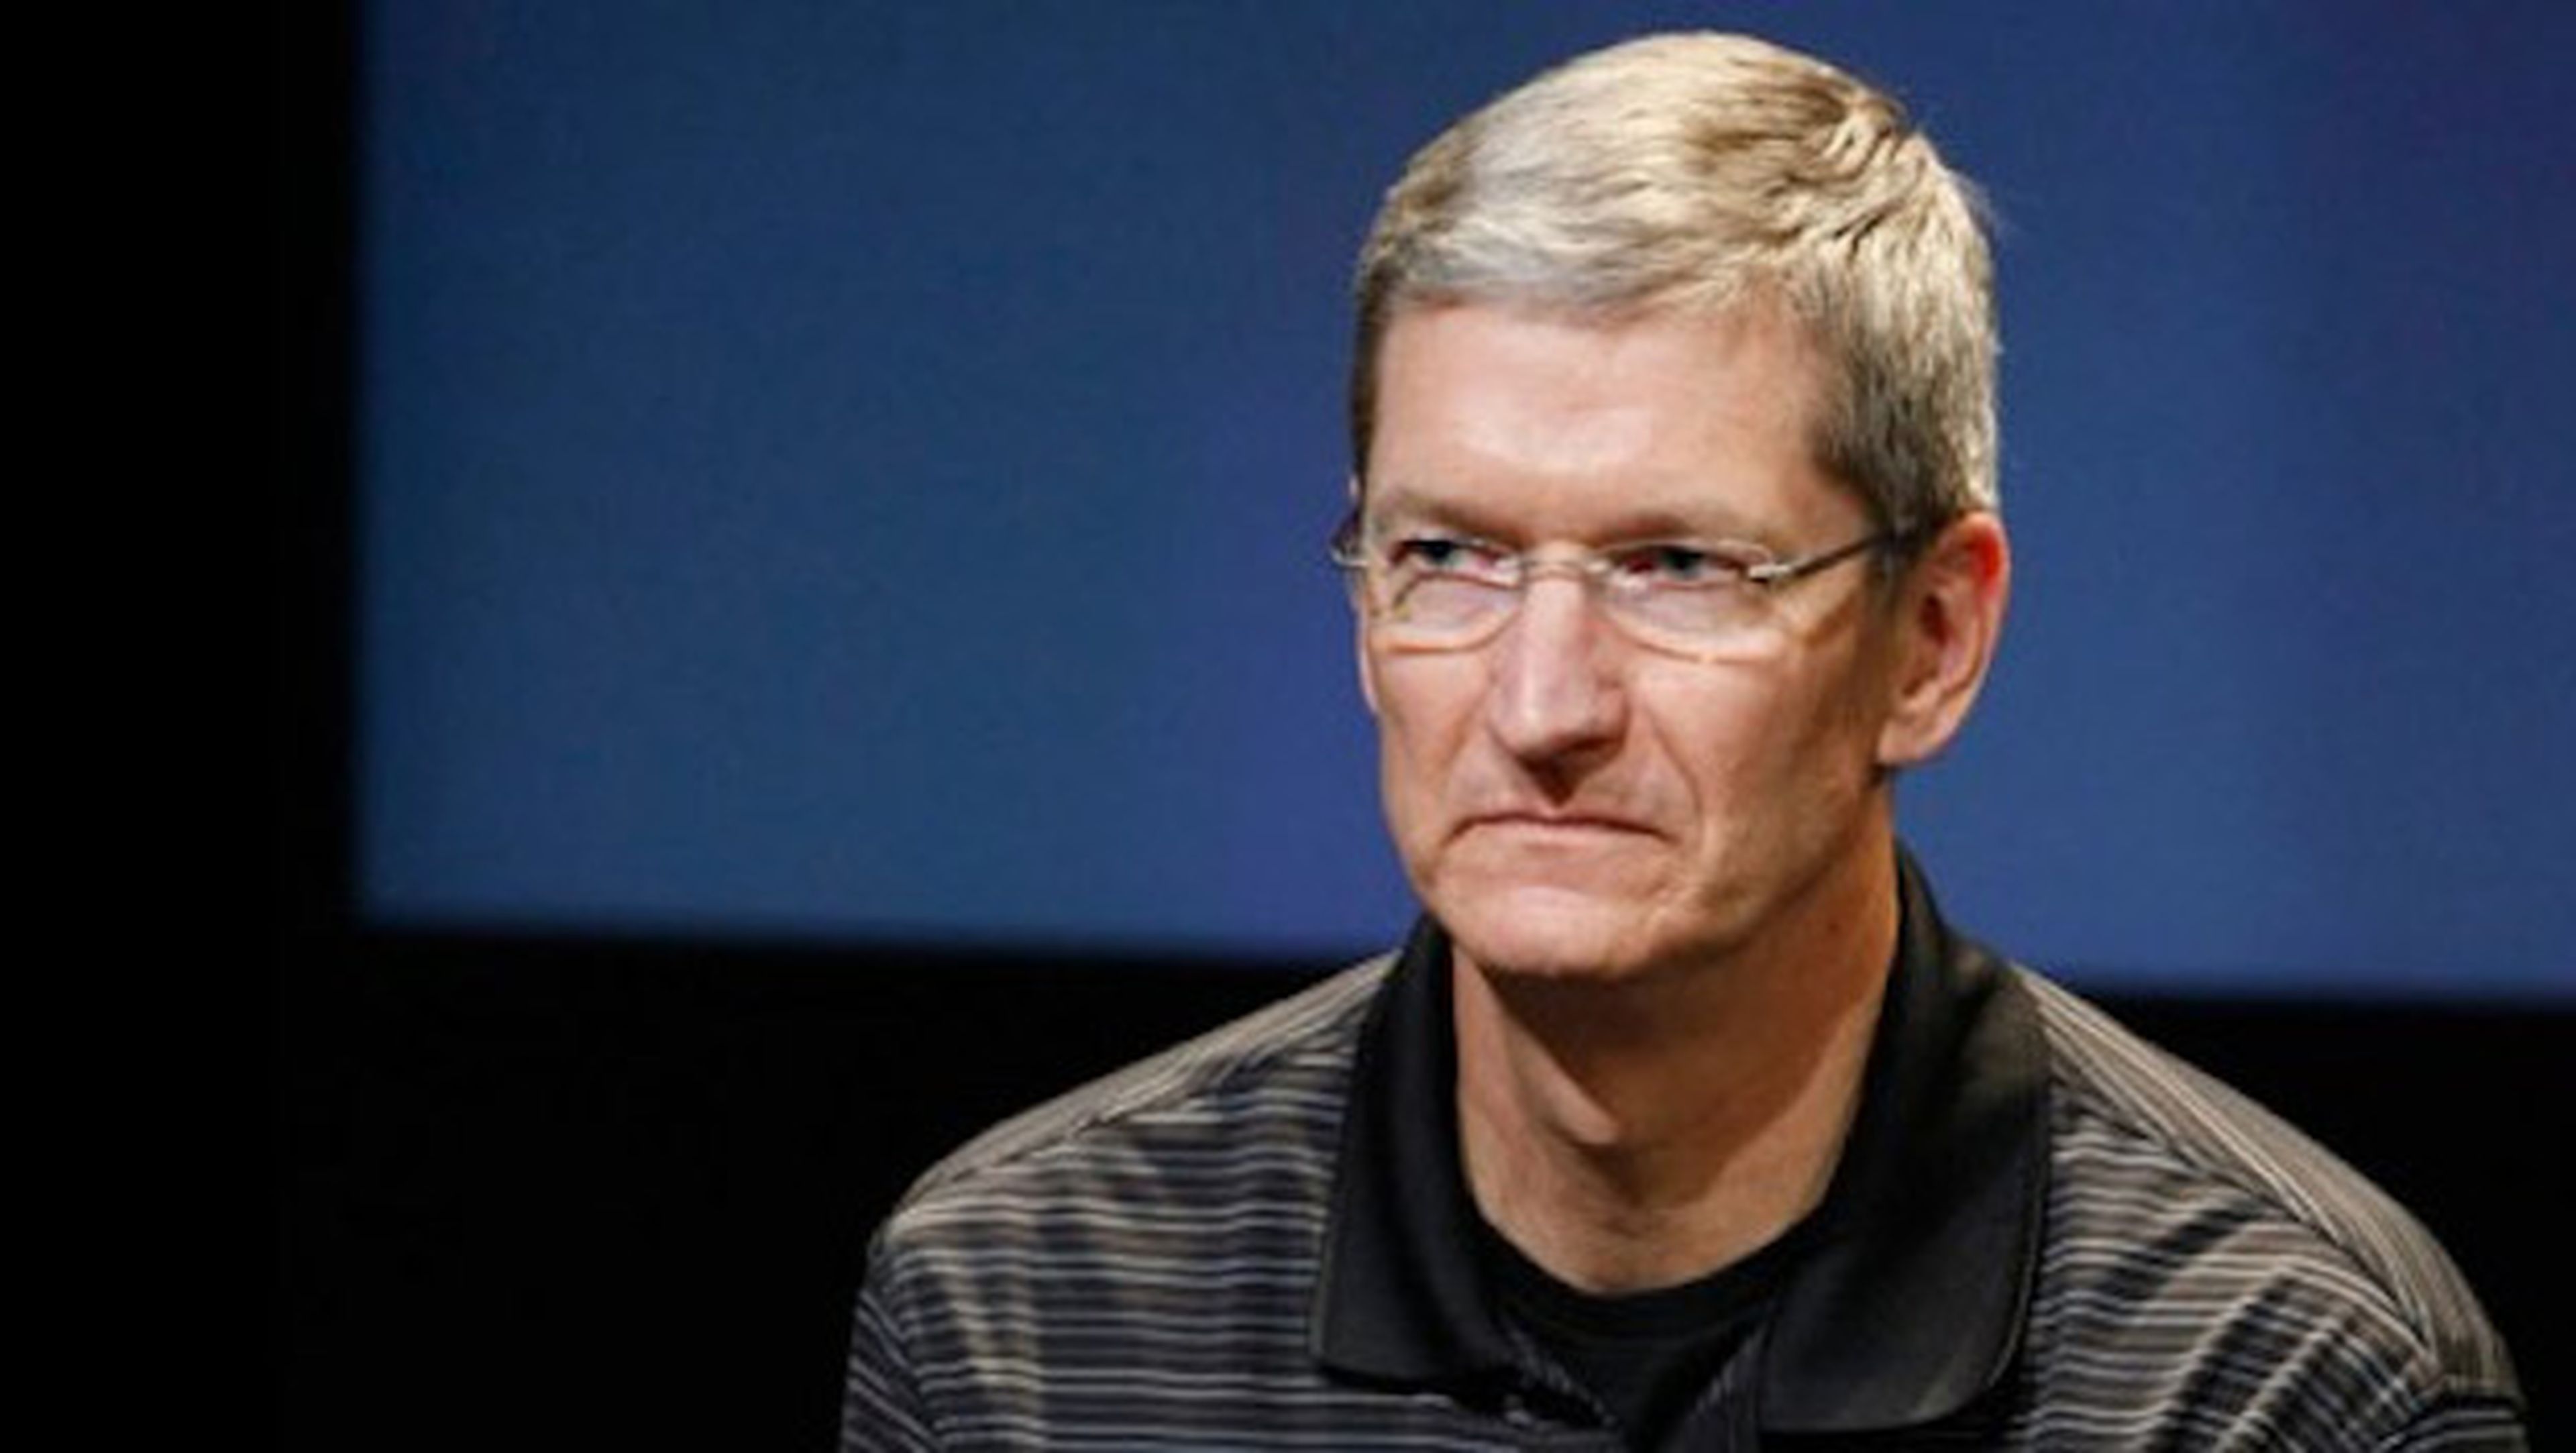 Cook reconoce iPhone 5C no tuvo éxito esperado